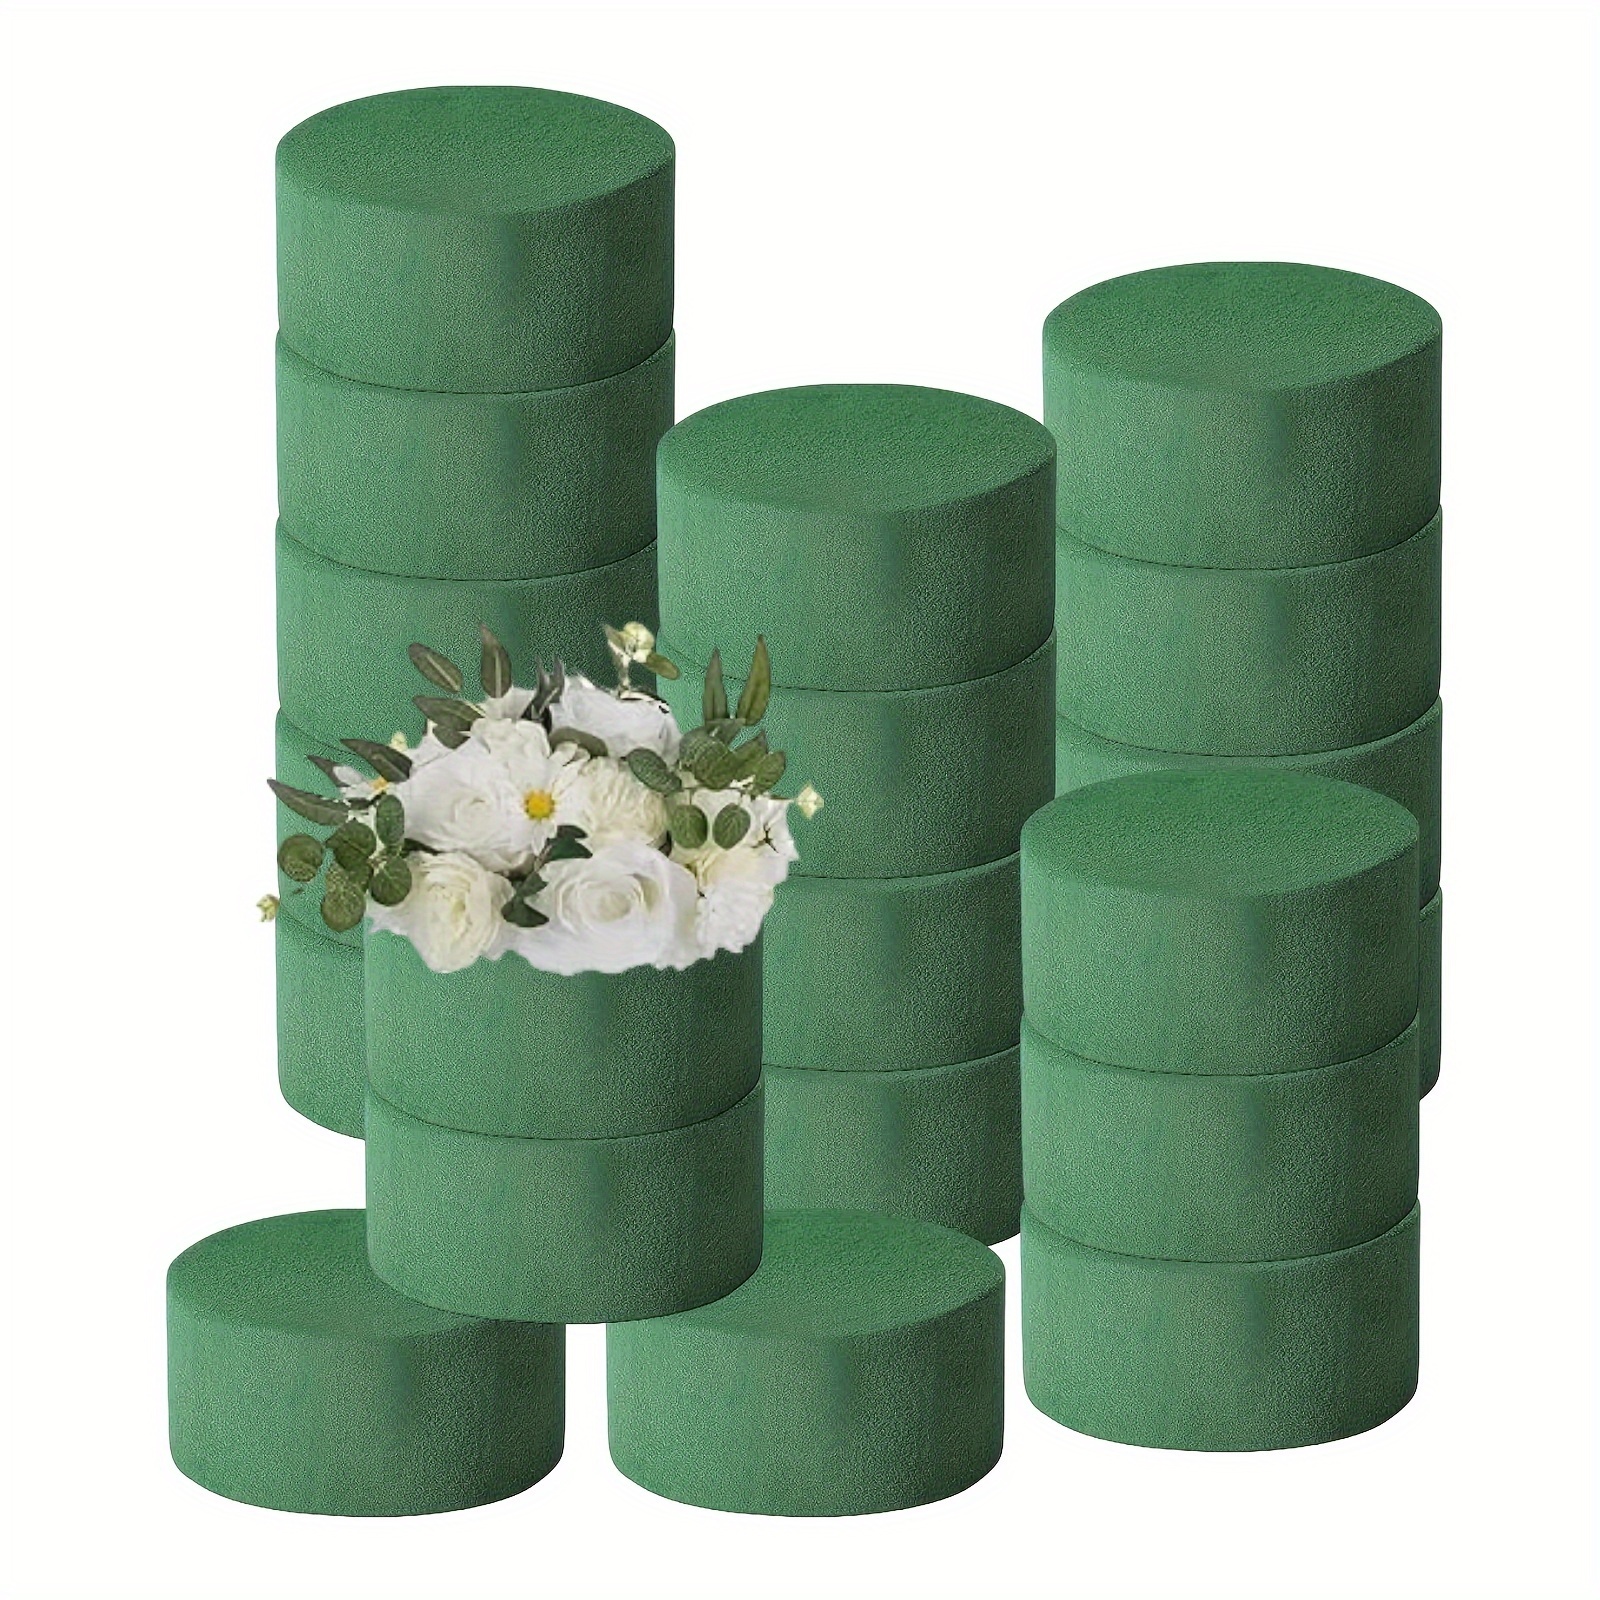 

20pcs Value Pack Round Flower Foam, Foam Block Flower Arrangement Supplies, Party Decoration Flower Mud, Green Wet Foam Block, Wet , Suitable For Wedding Aisle Flowers (20pcs)